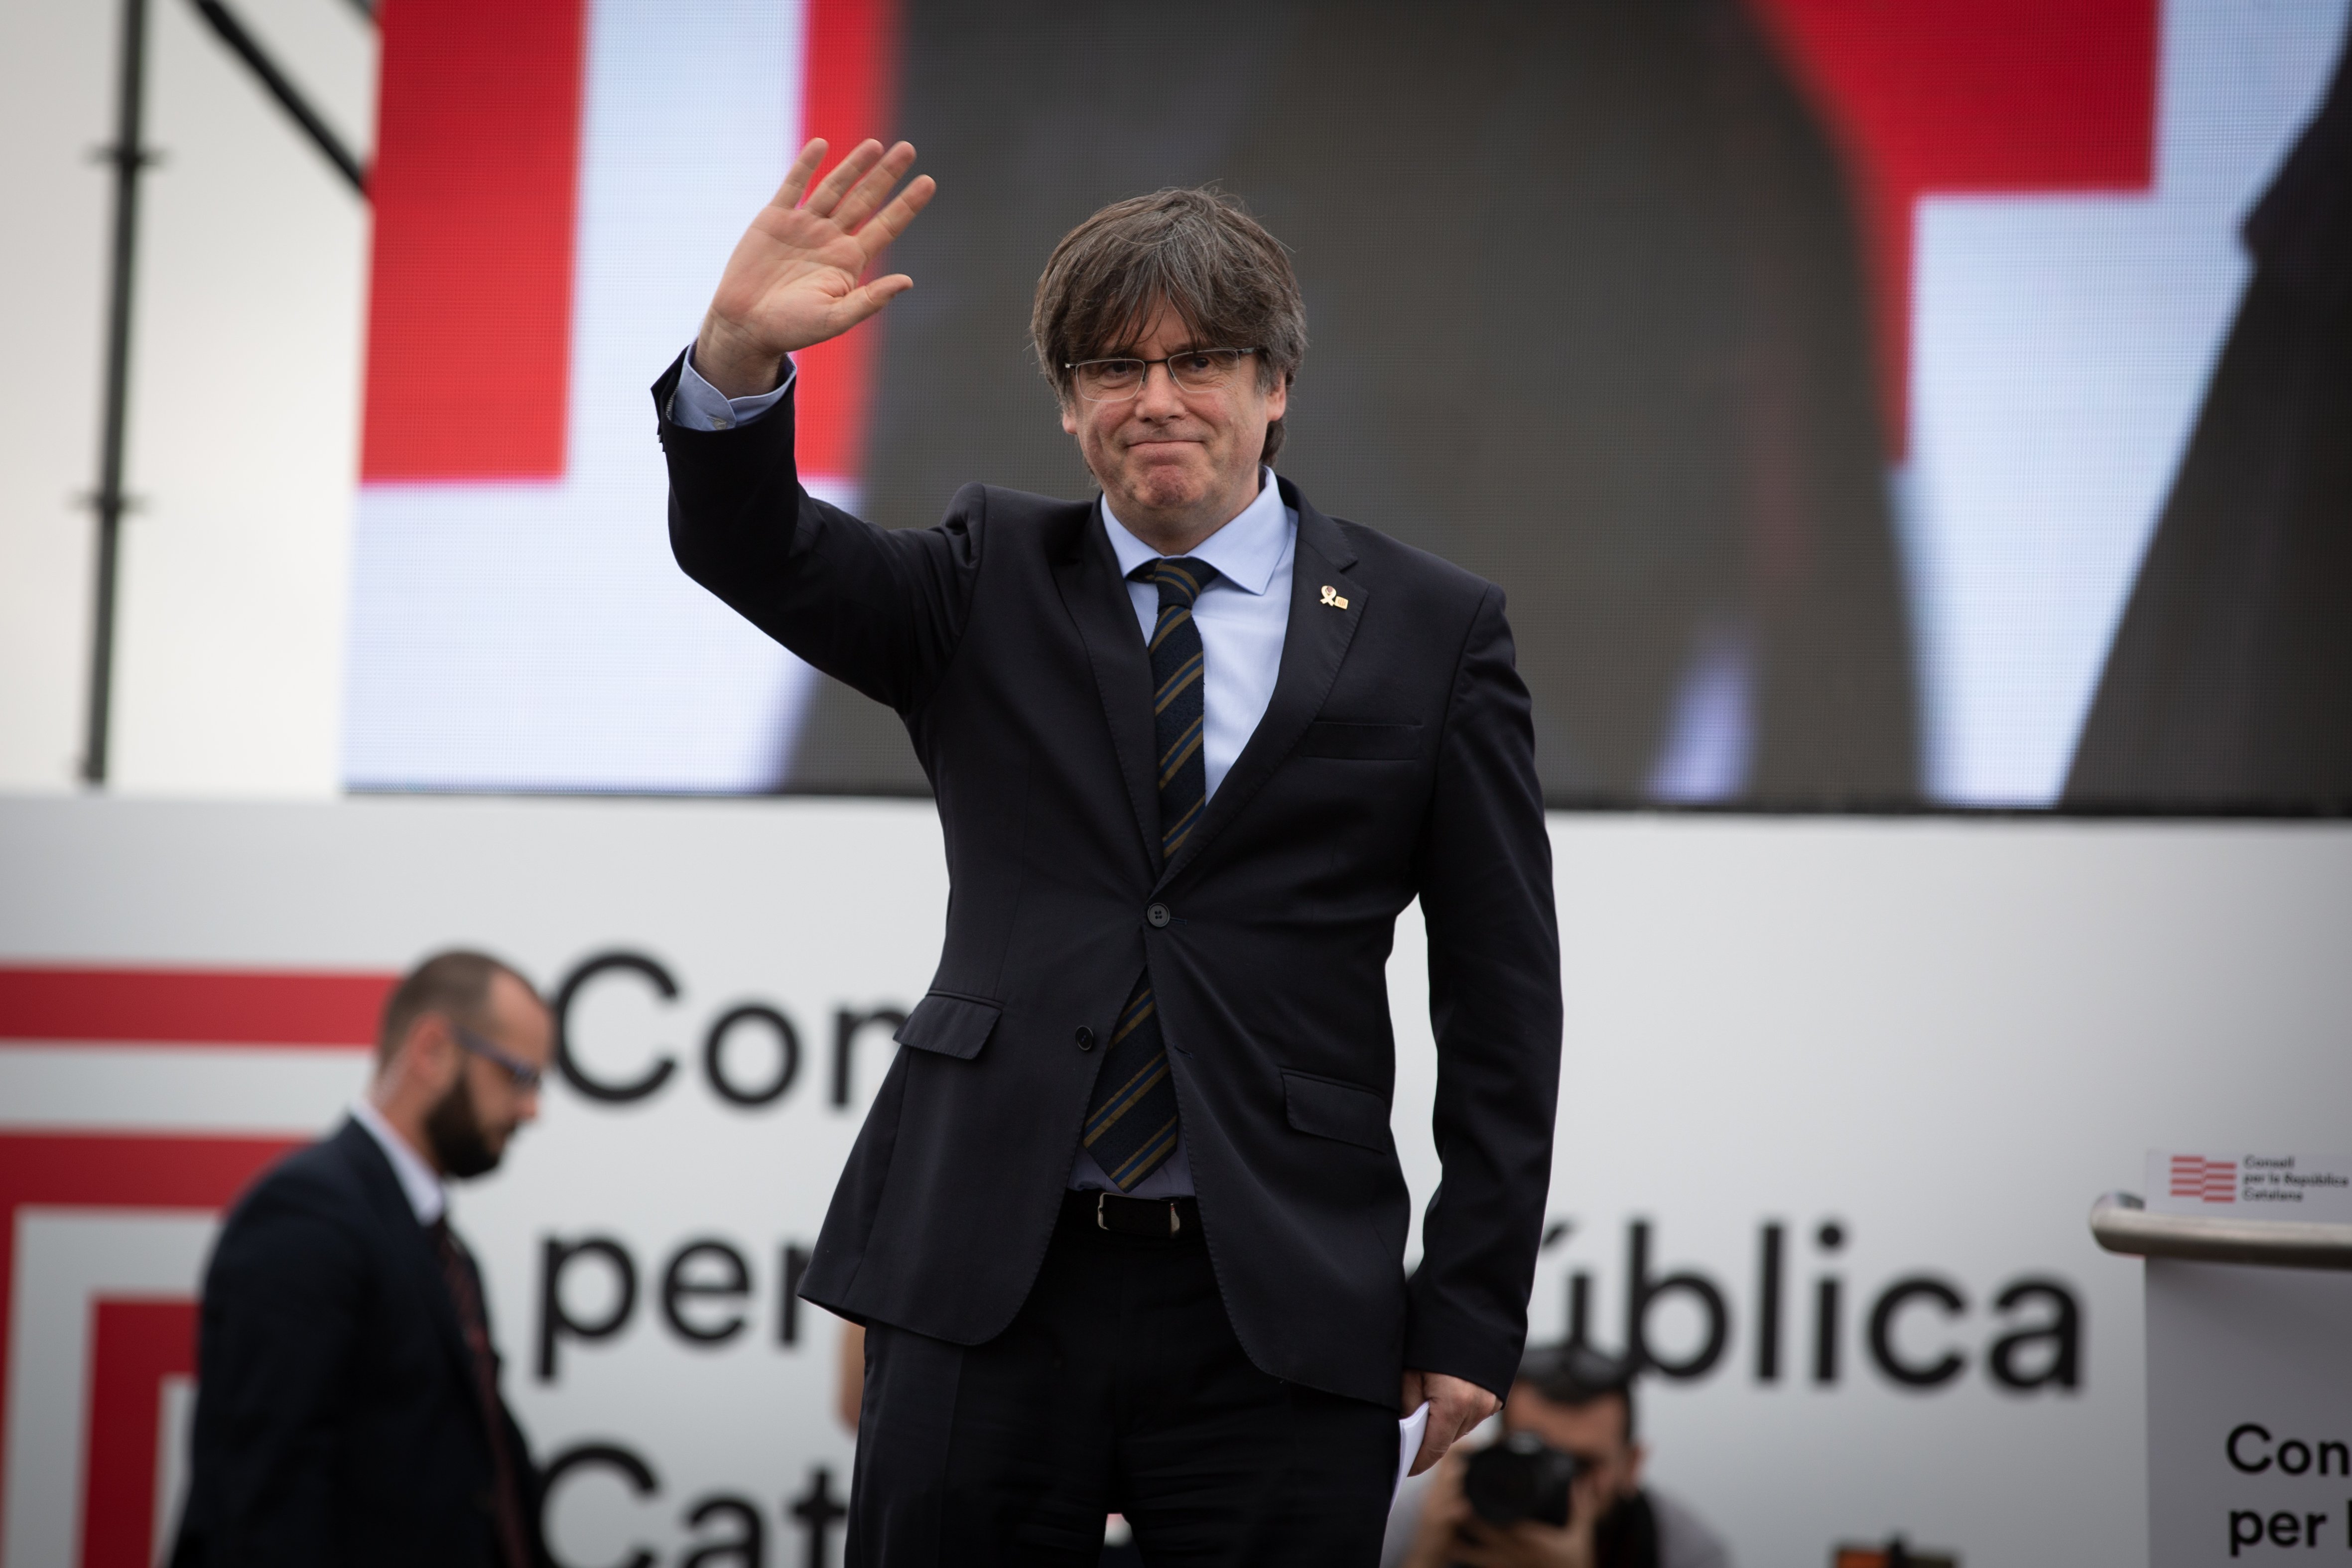 JxCat preveu que Puigdemont encapçali la candidatura per Barcelona